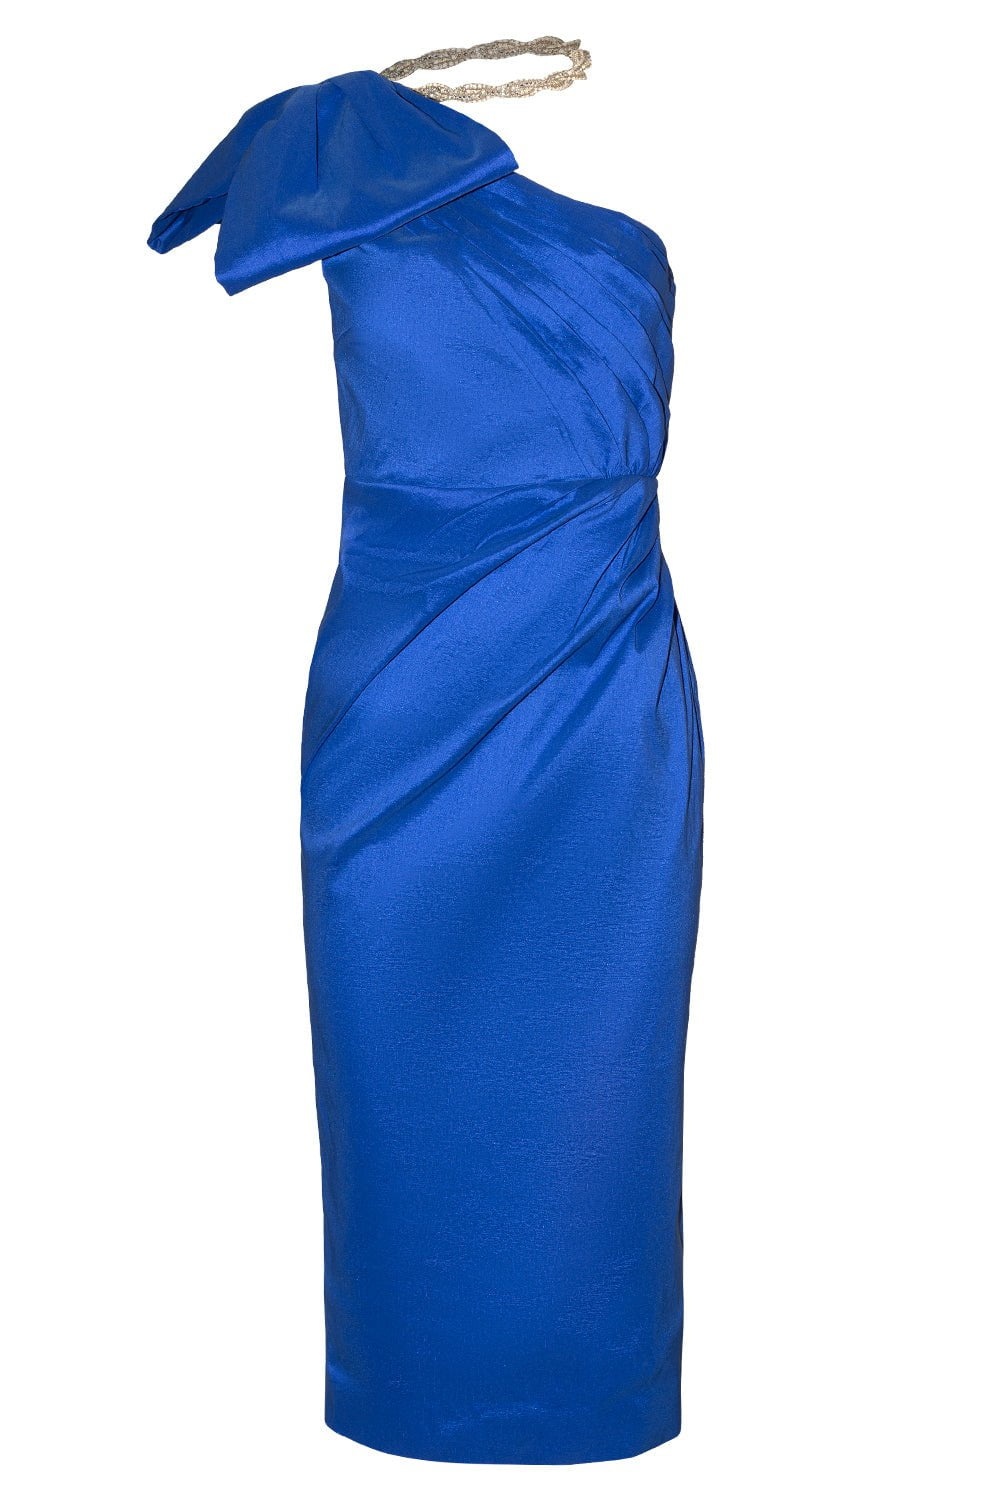 Fauve Dress - 1